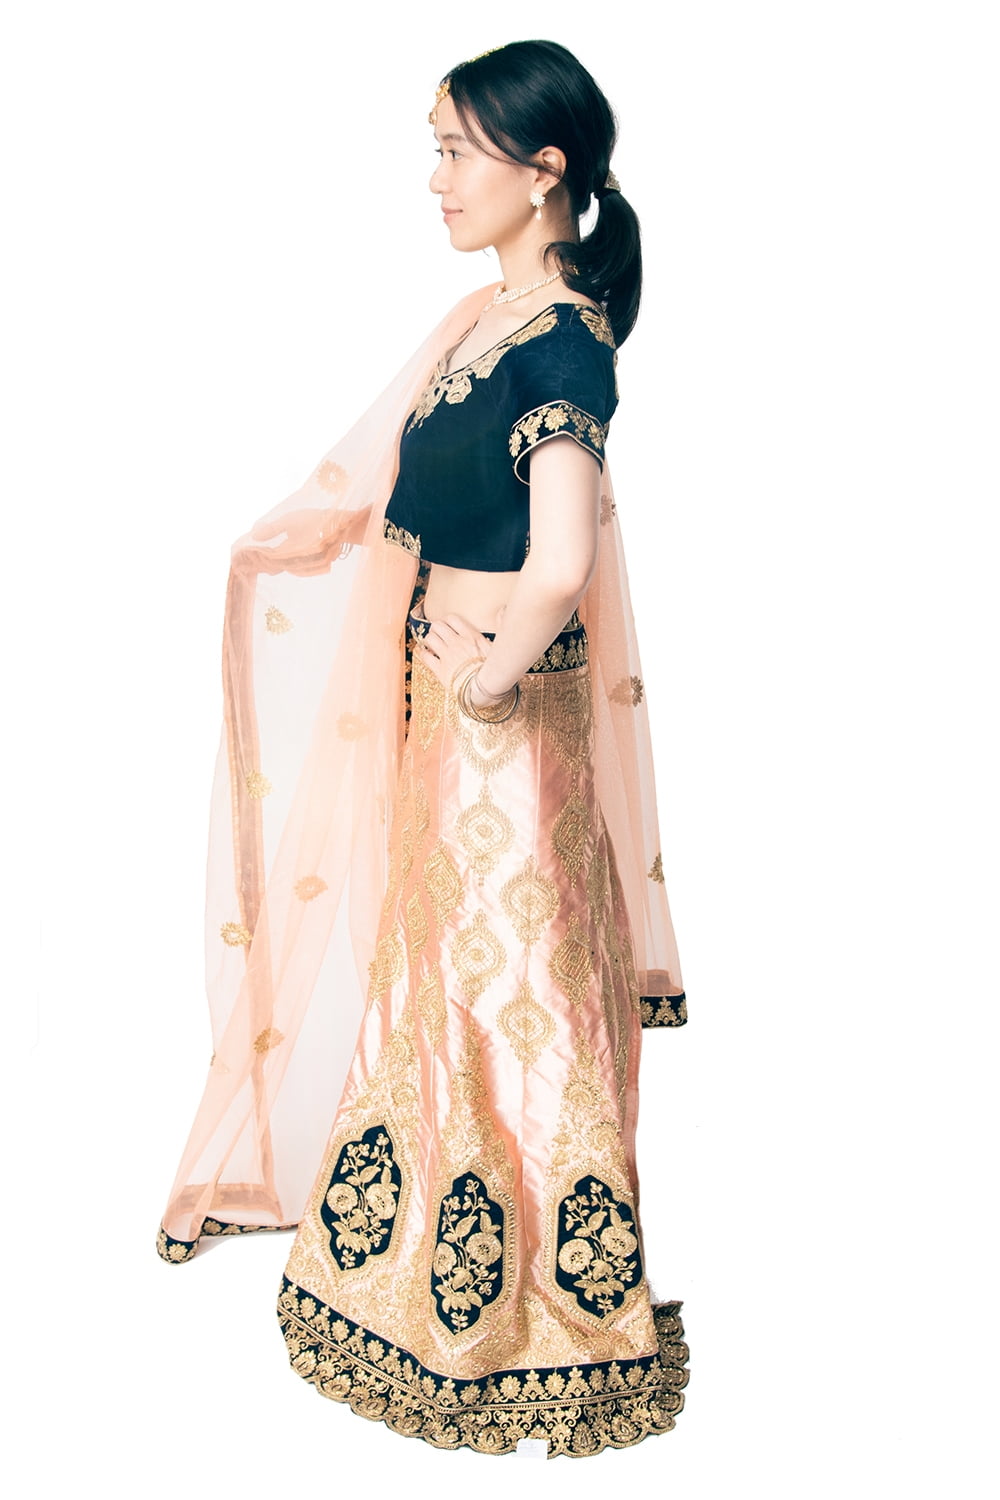 素敵な インドの民族衣装レヘンガ サリー 大陸 その他 - rekreativo 